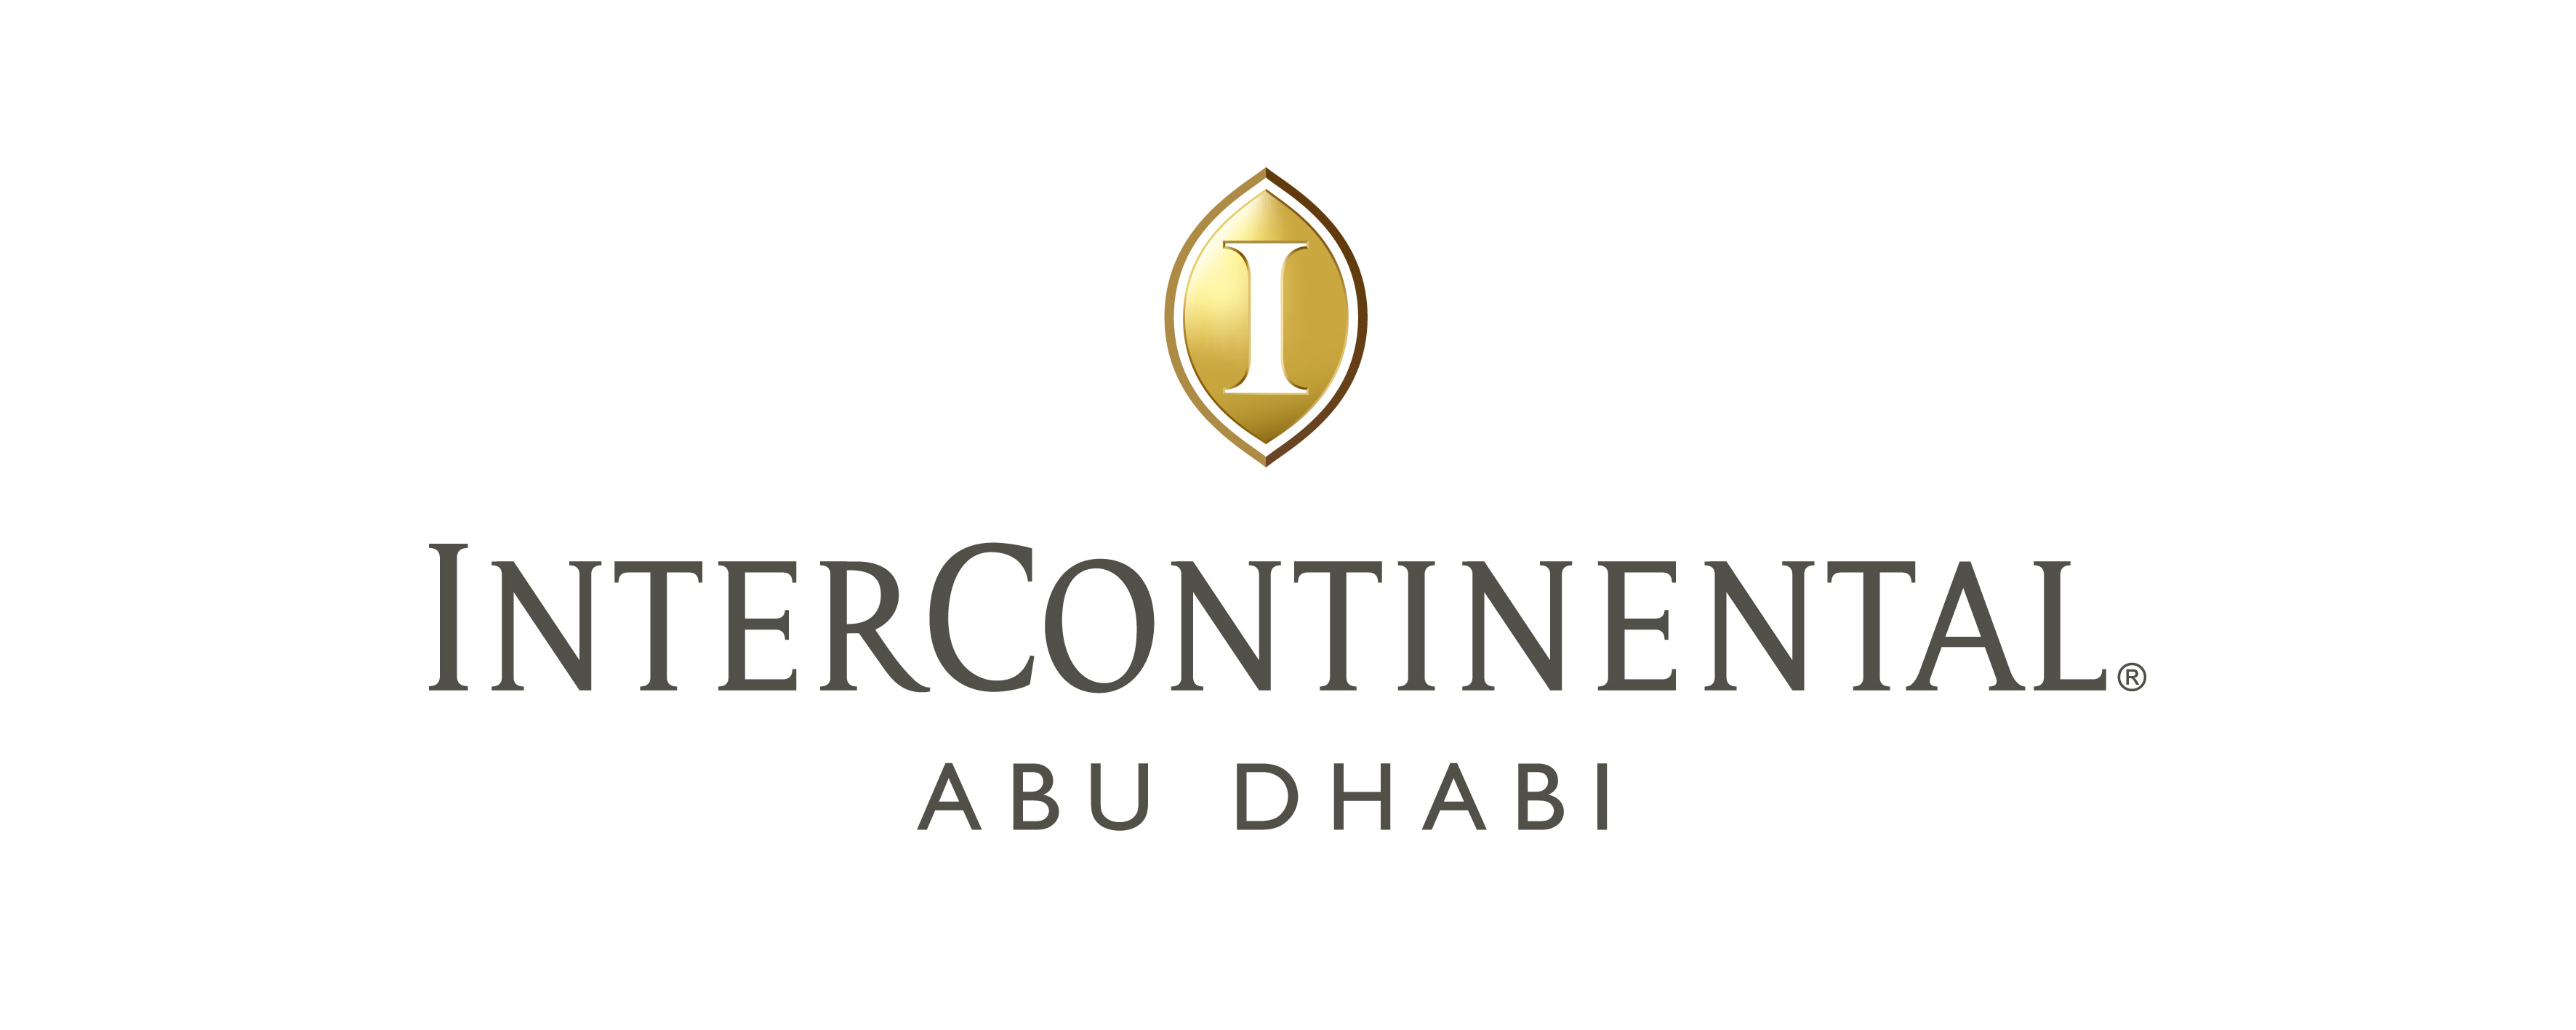 InterContinental Abu Dhabi Hotel 1